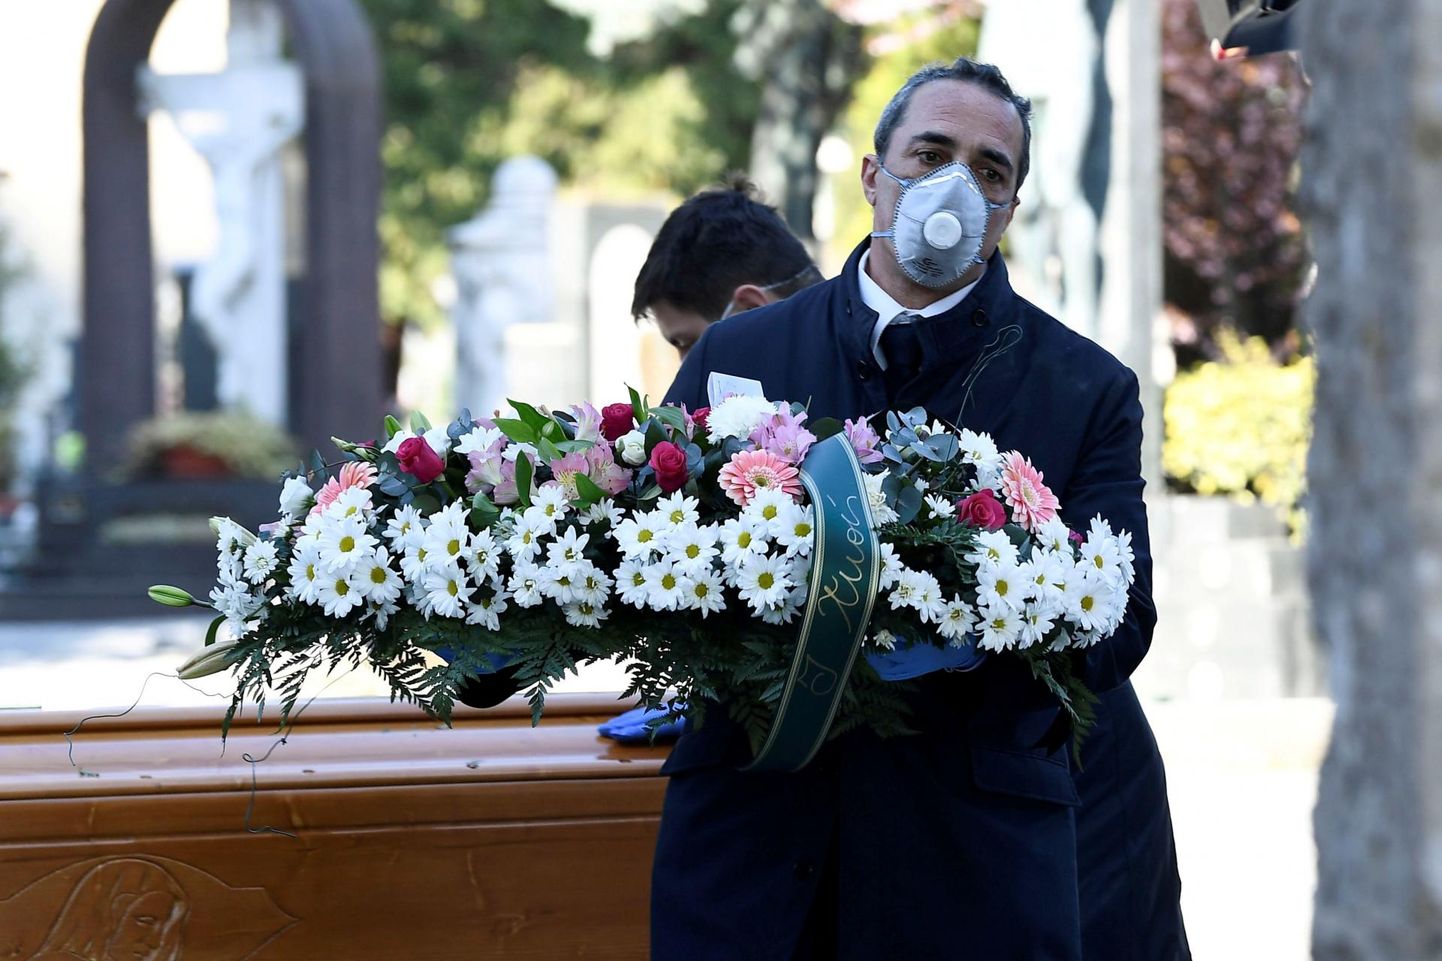 Bergamo surnuaiatöötaja kandmas kätel lilli ja näo ees maski. Euroopa riikidest on kõige rohkem surmajuhtumeid olnud just Itaalias. 